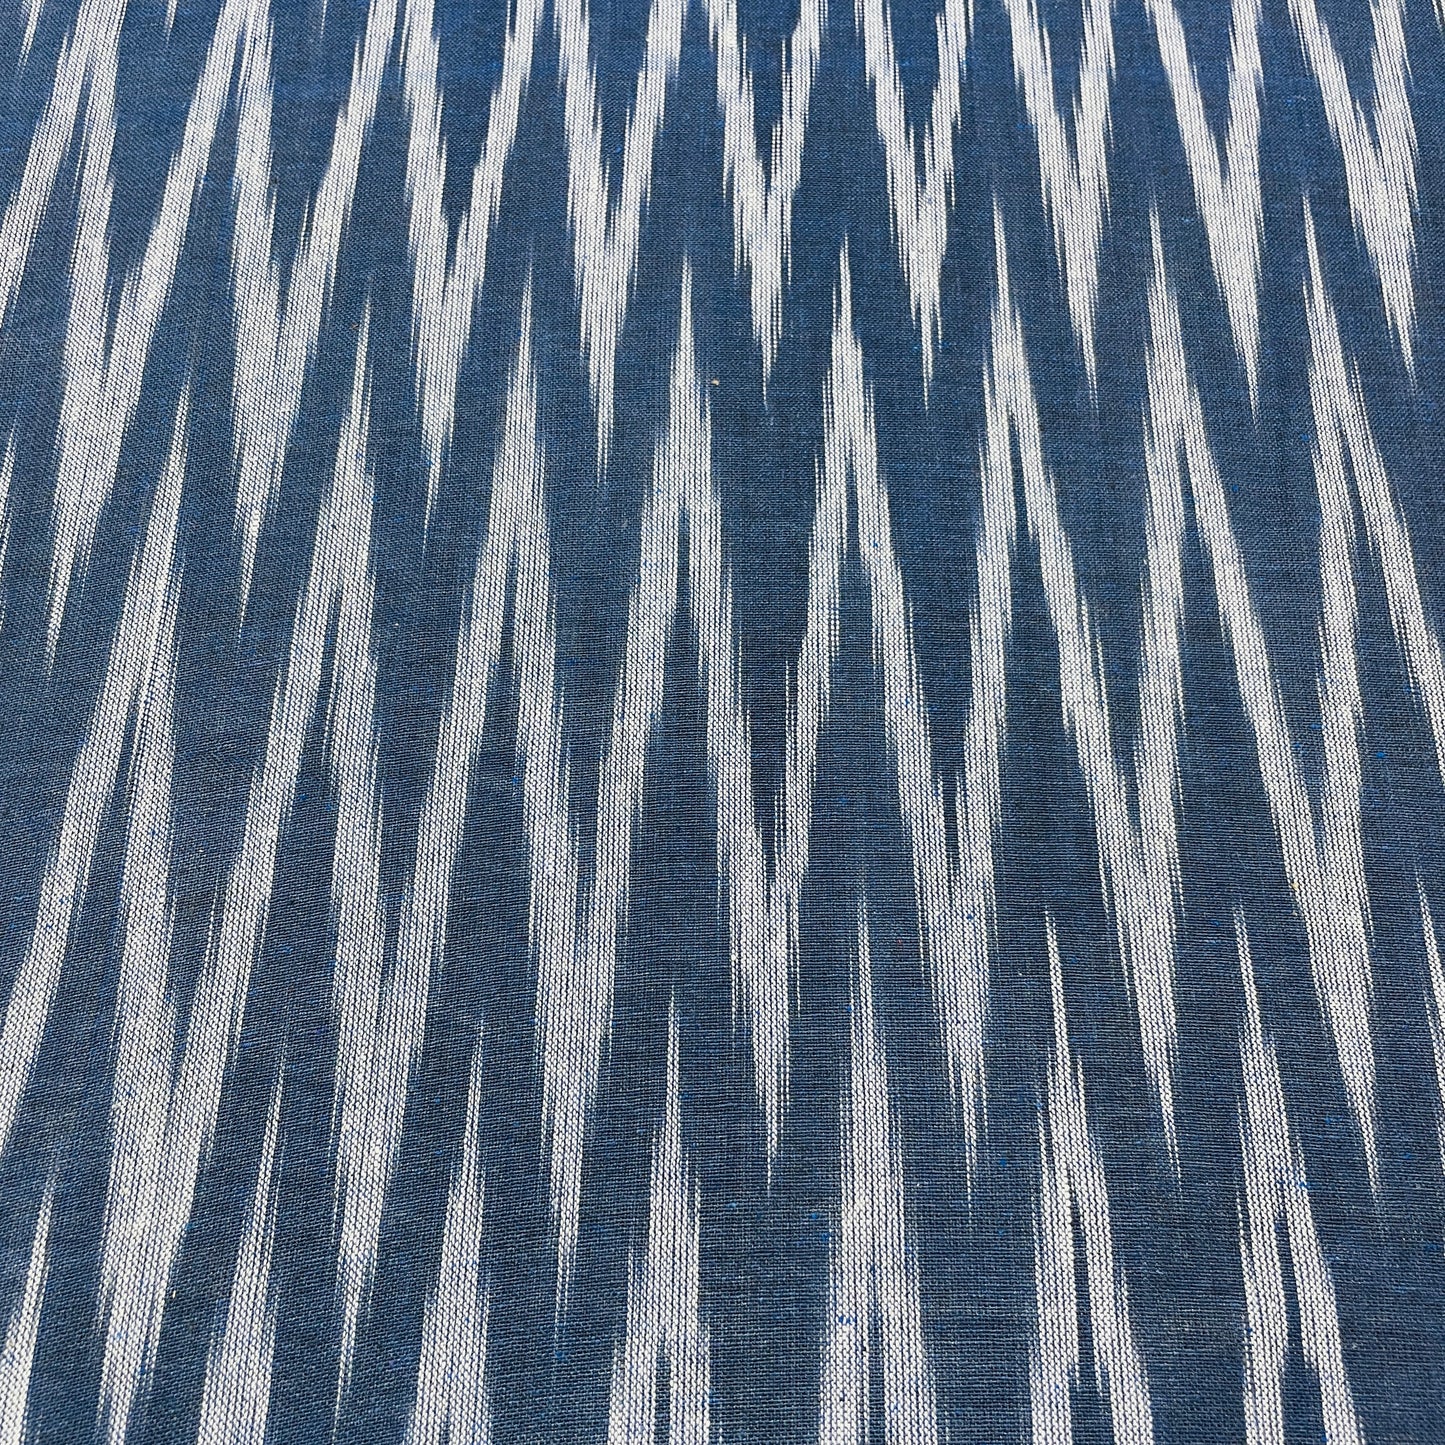 Blue White Stripes Print Cotton Fabric - TradeUNO